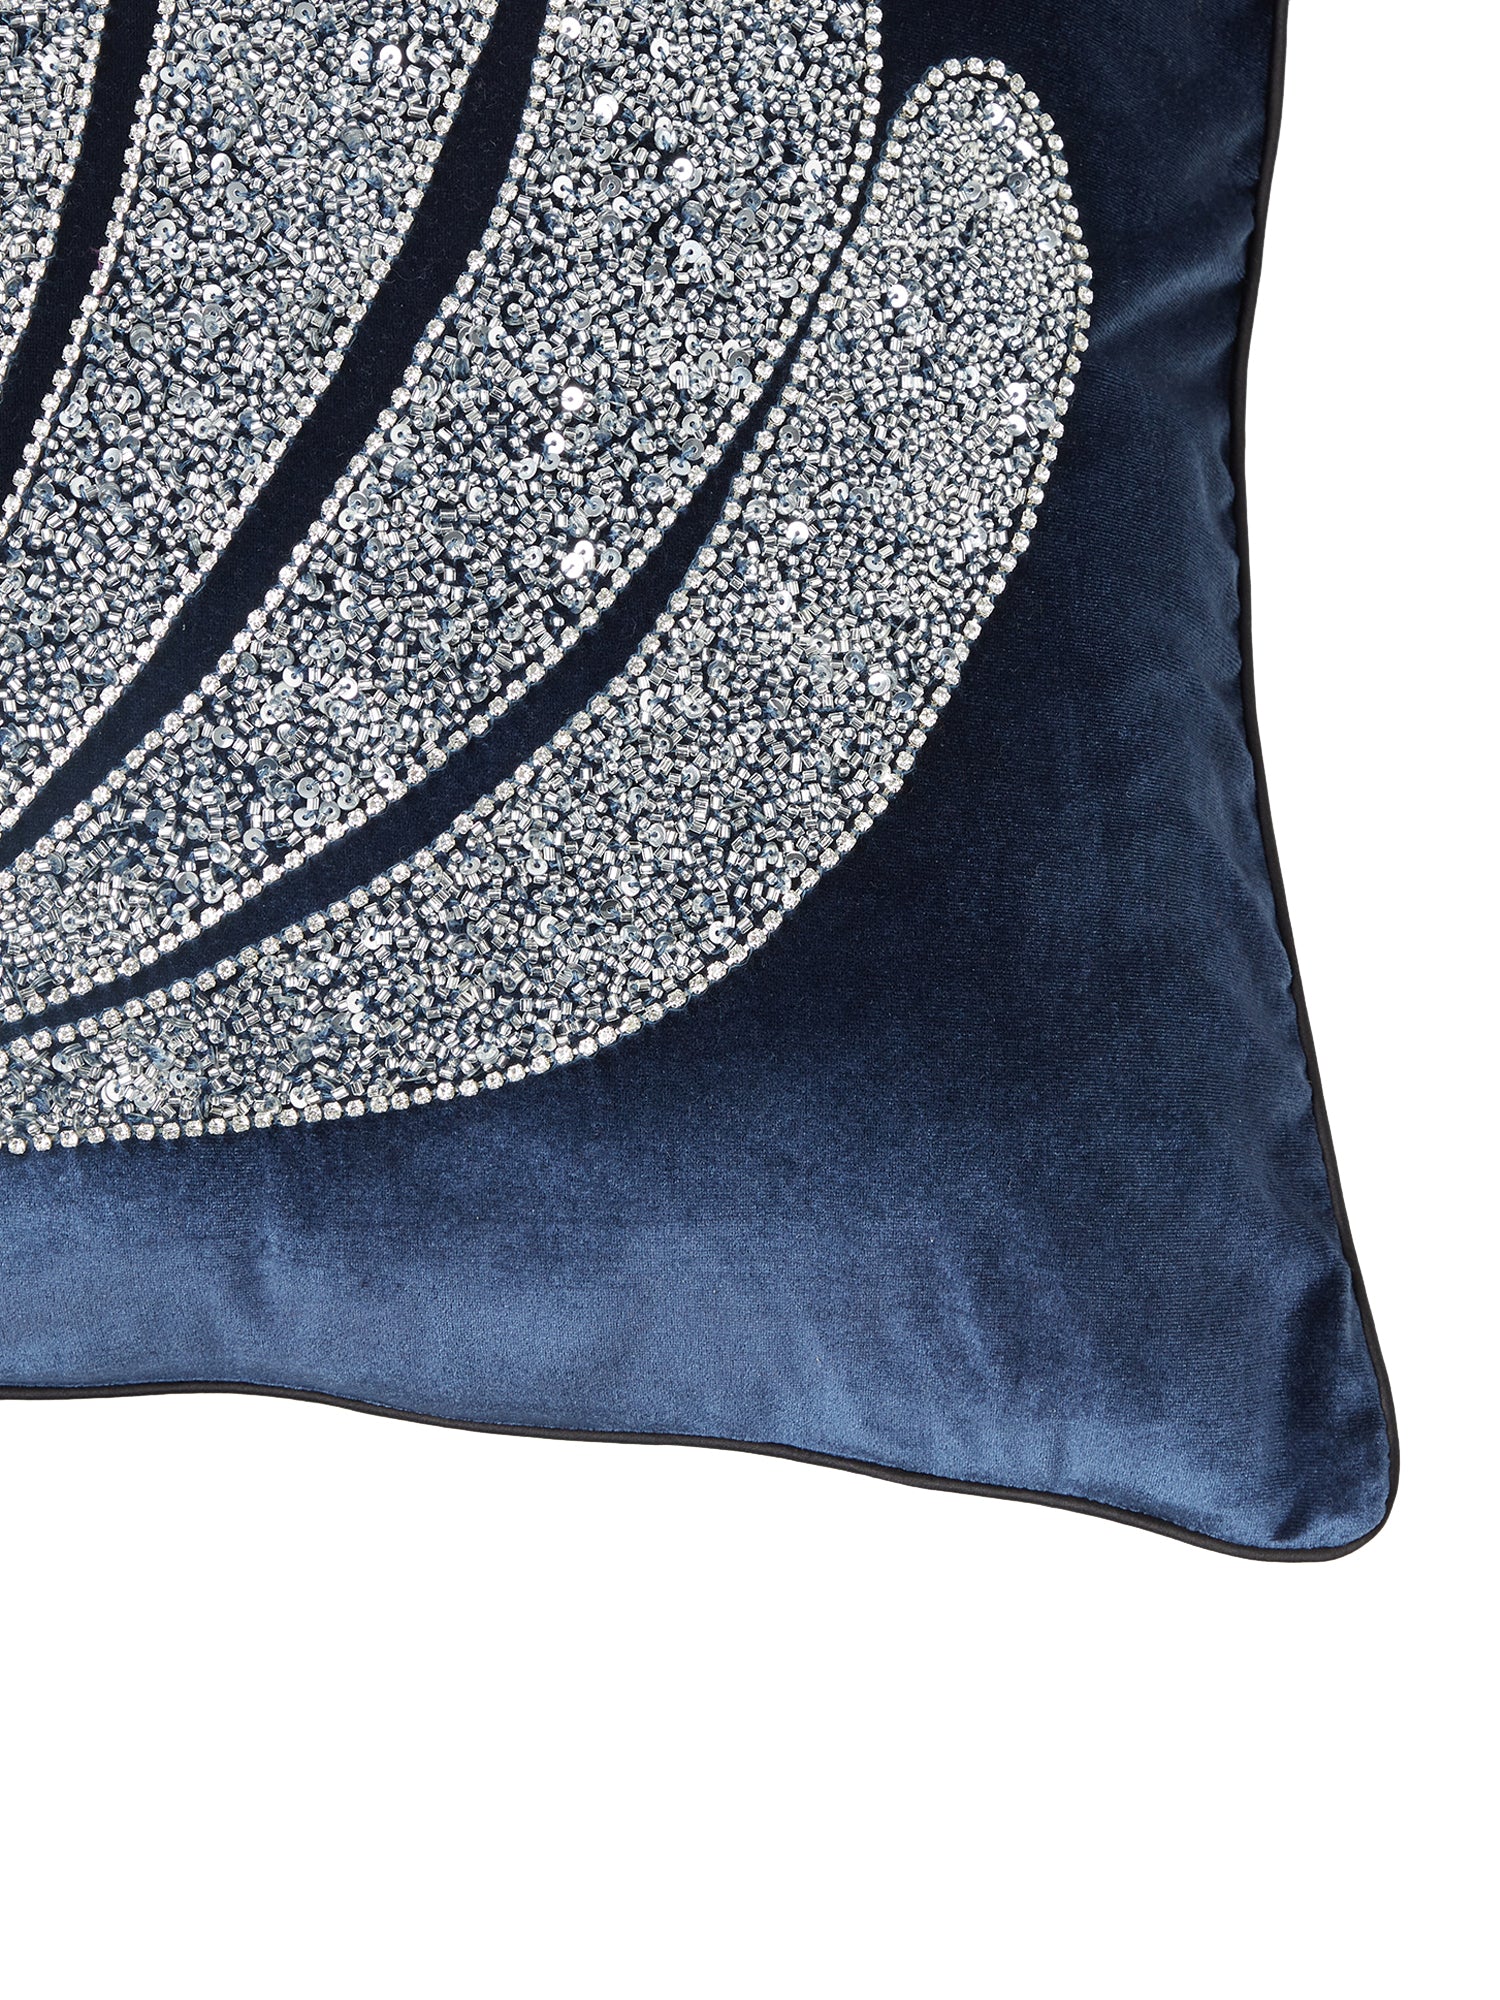 blue plush embellished cushion